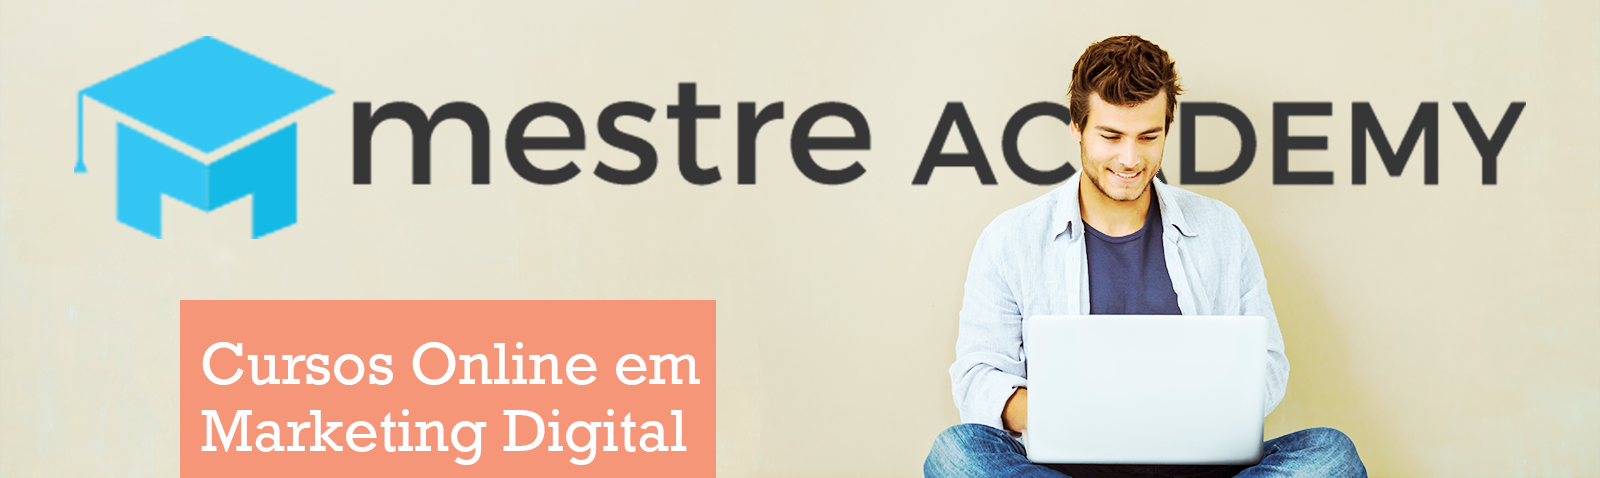 Mestre Academy Cursos Online em Marketing Digital